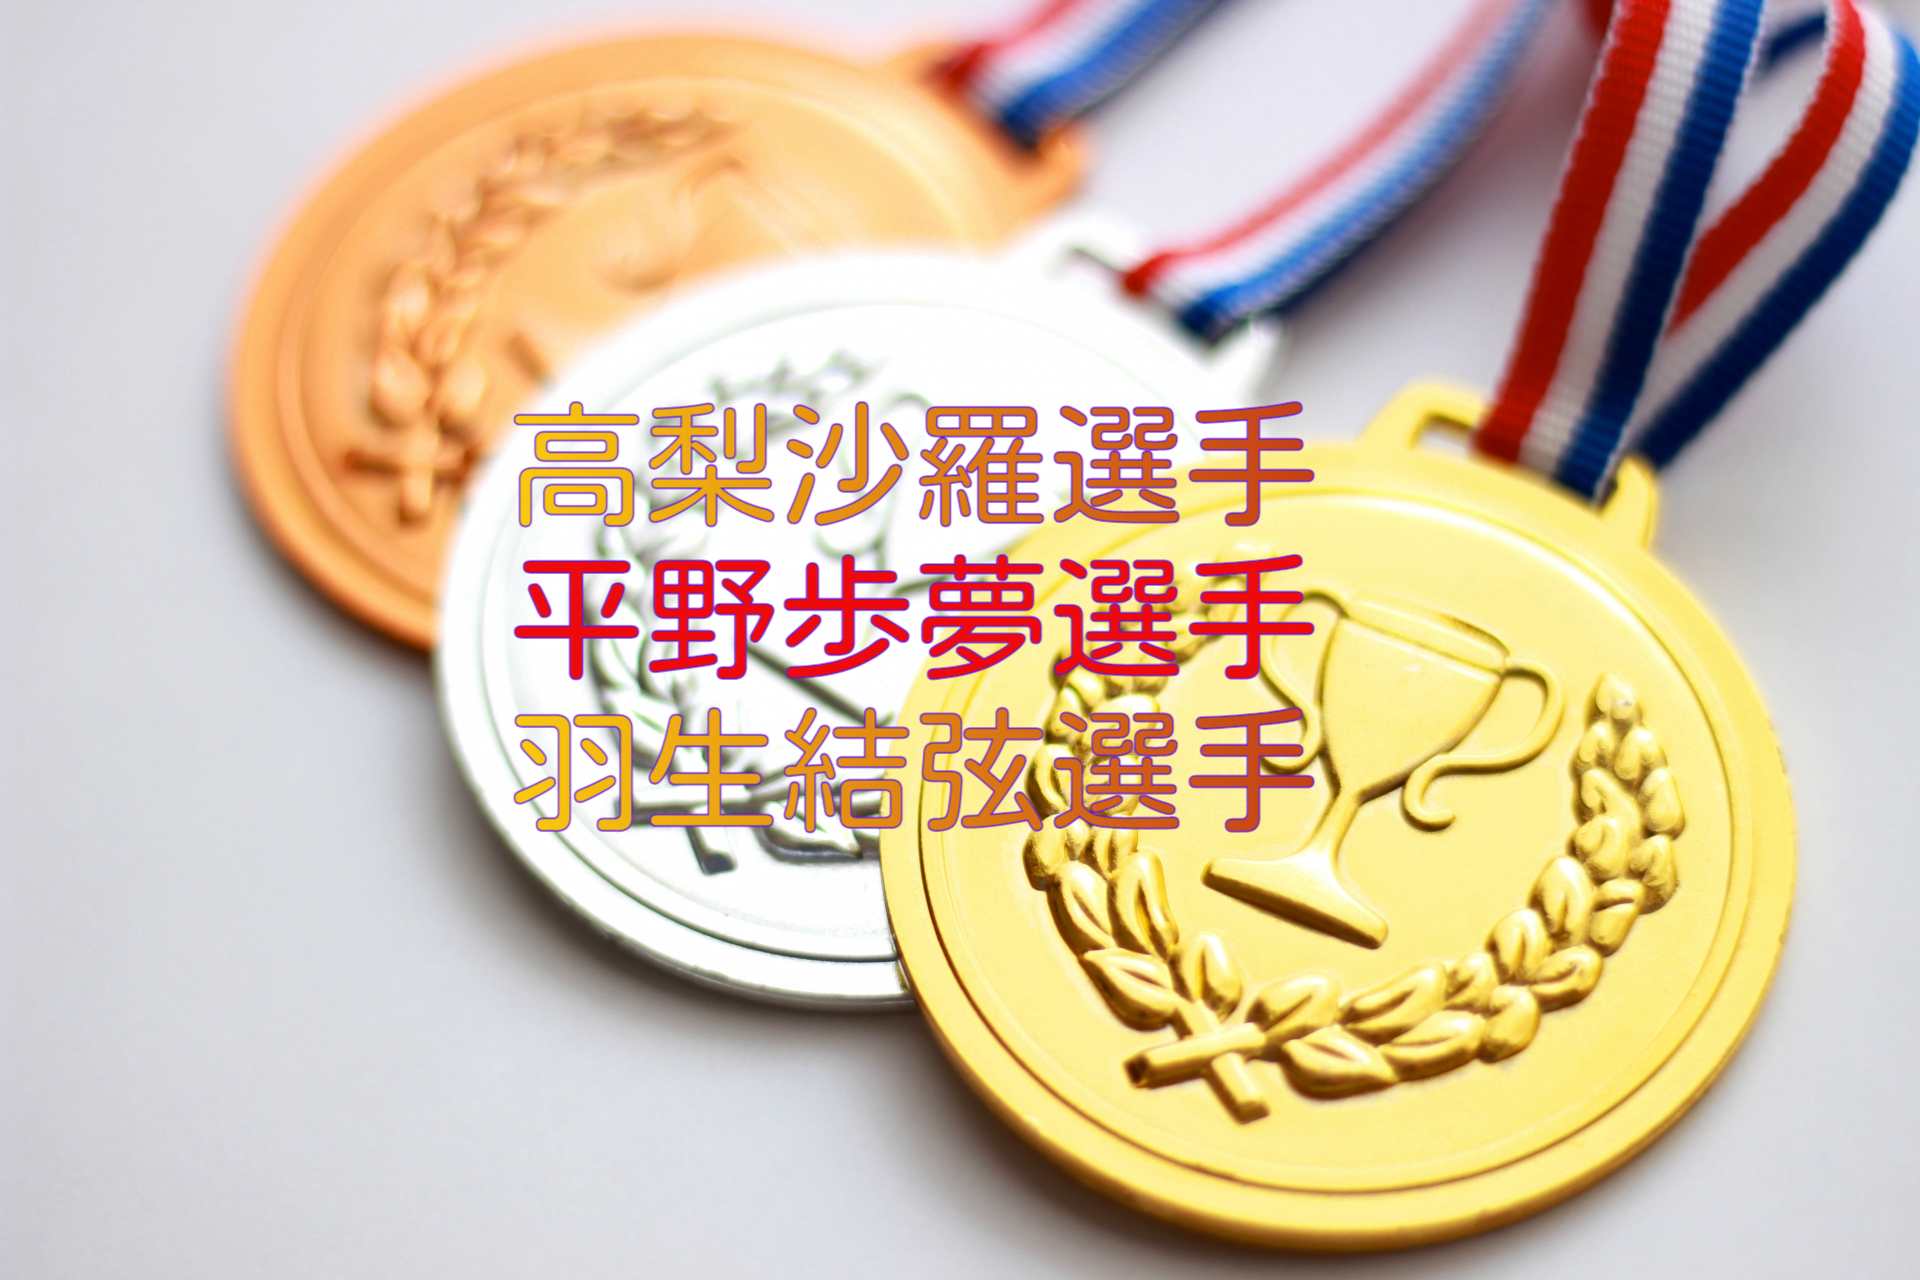 北京オリンピック2022日本代表選手の活躍とメディアからの扱い3選